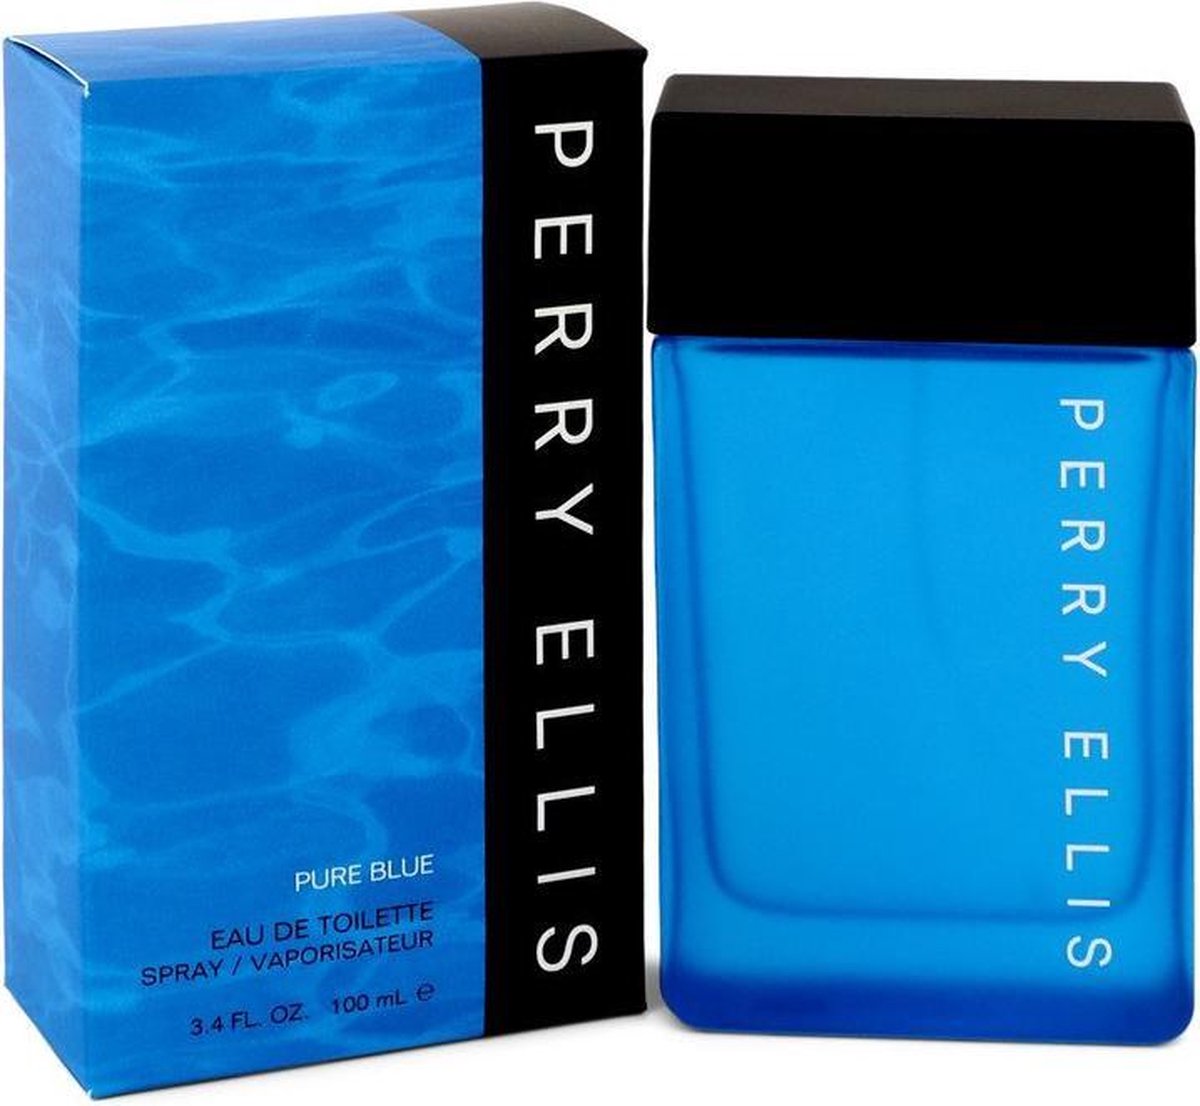 Perry Ellis Pure Blue - Eau de toilette spray - 100 ml